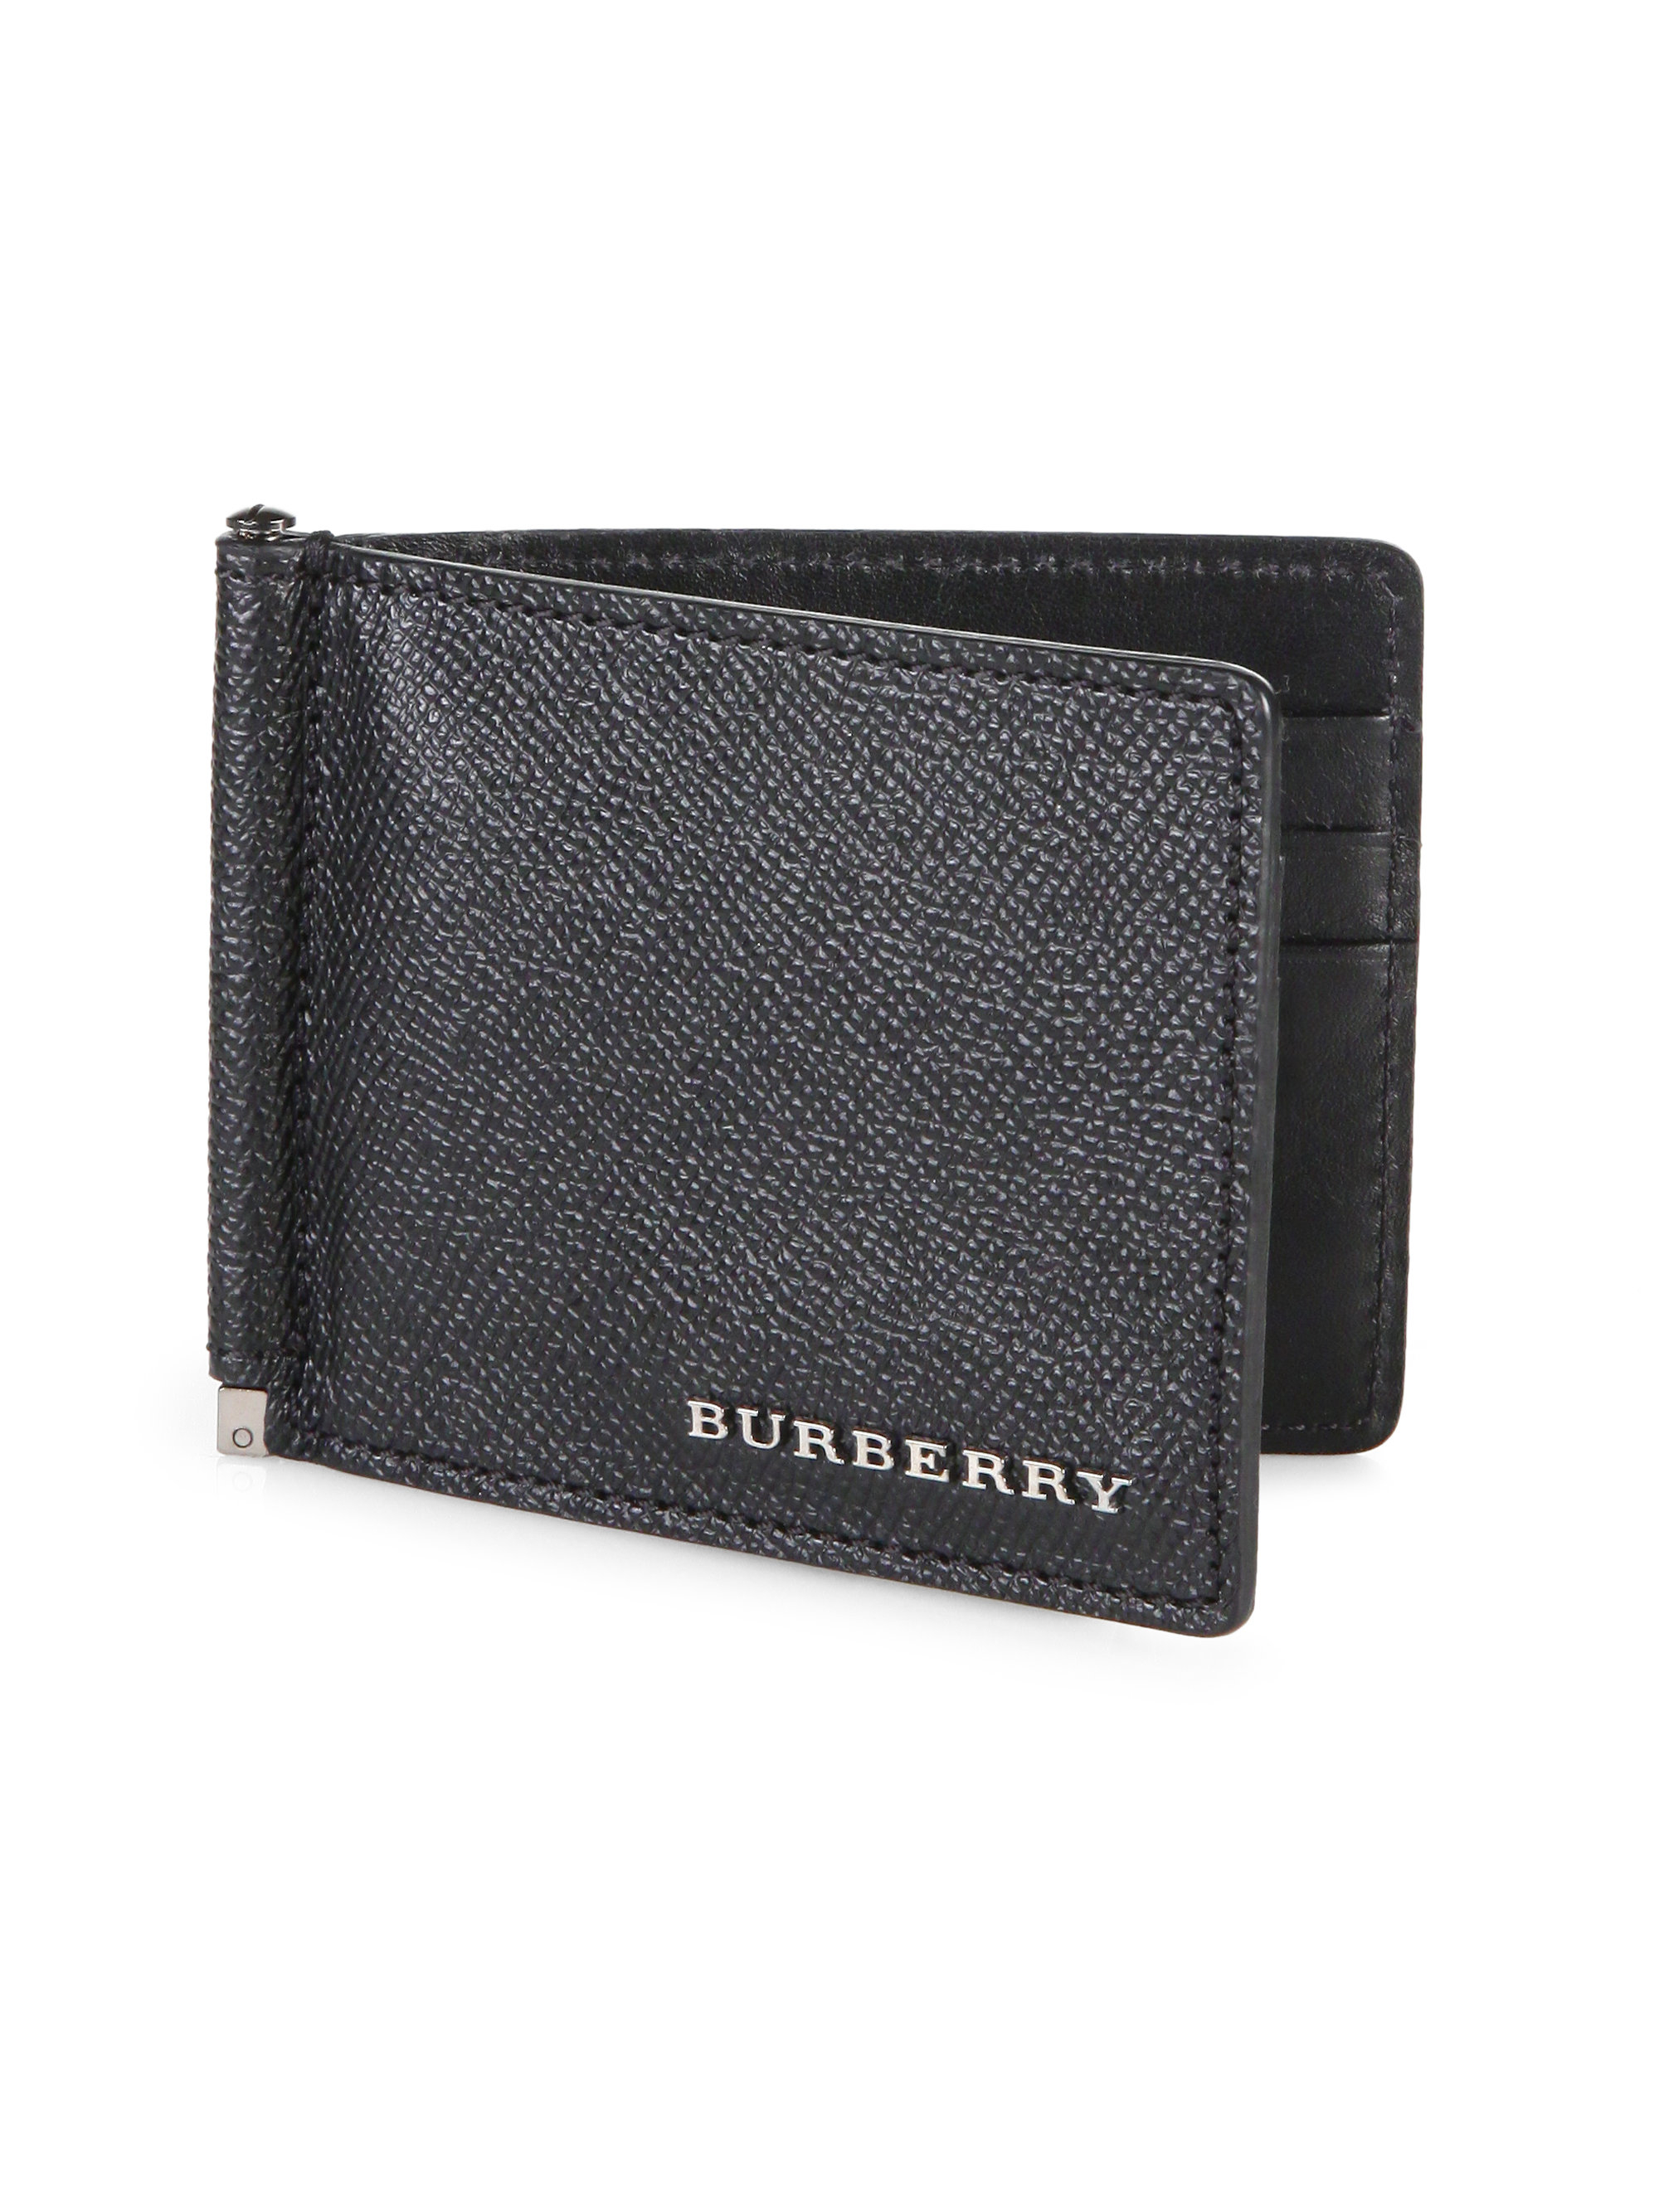 Burberry Quillen Clip Wallet in for Men - Lyst